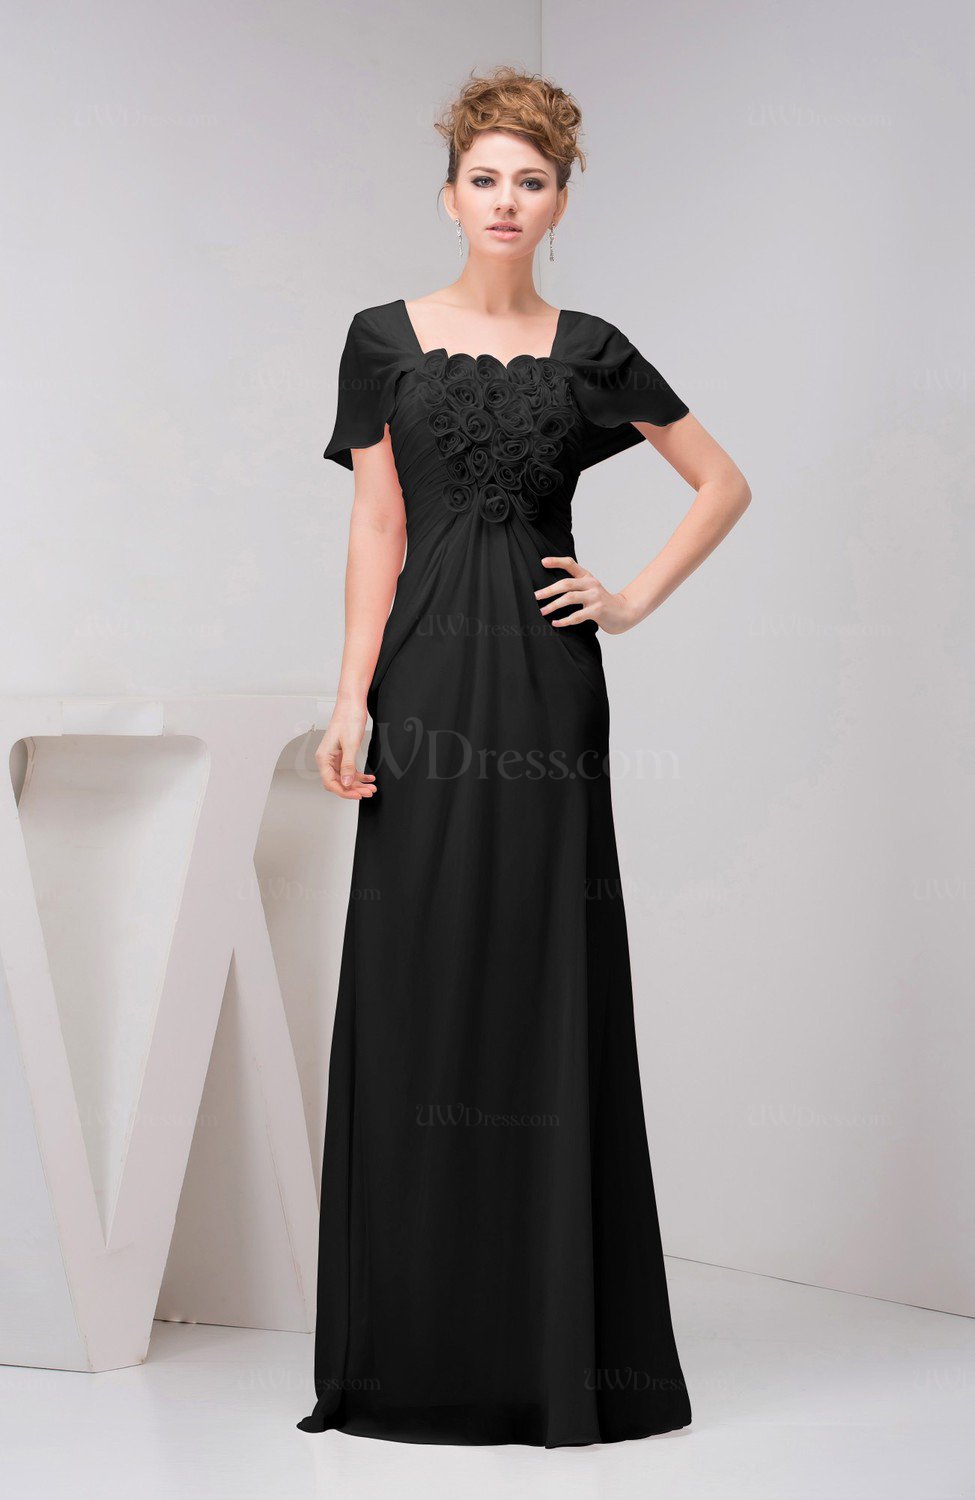 Black with Sleeves Bridesmaid Dress Chiffon Fall Casual Natural Outdoor ...